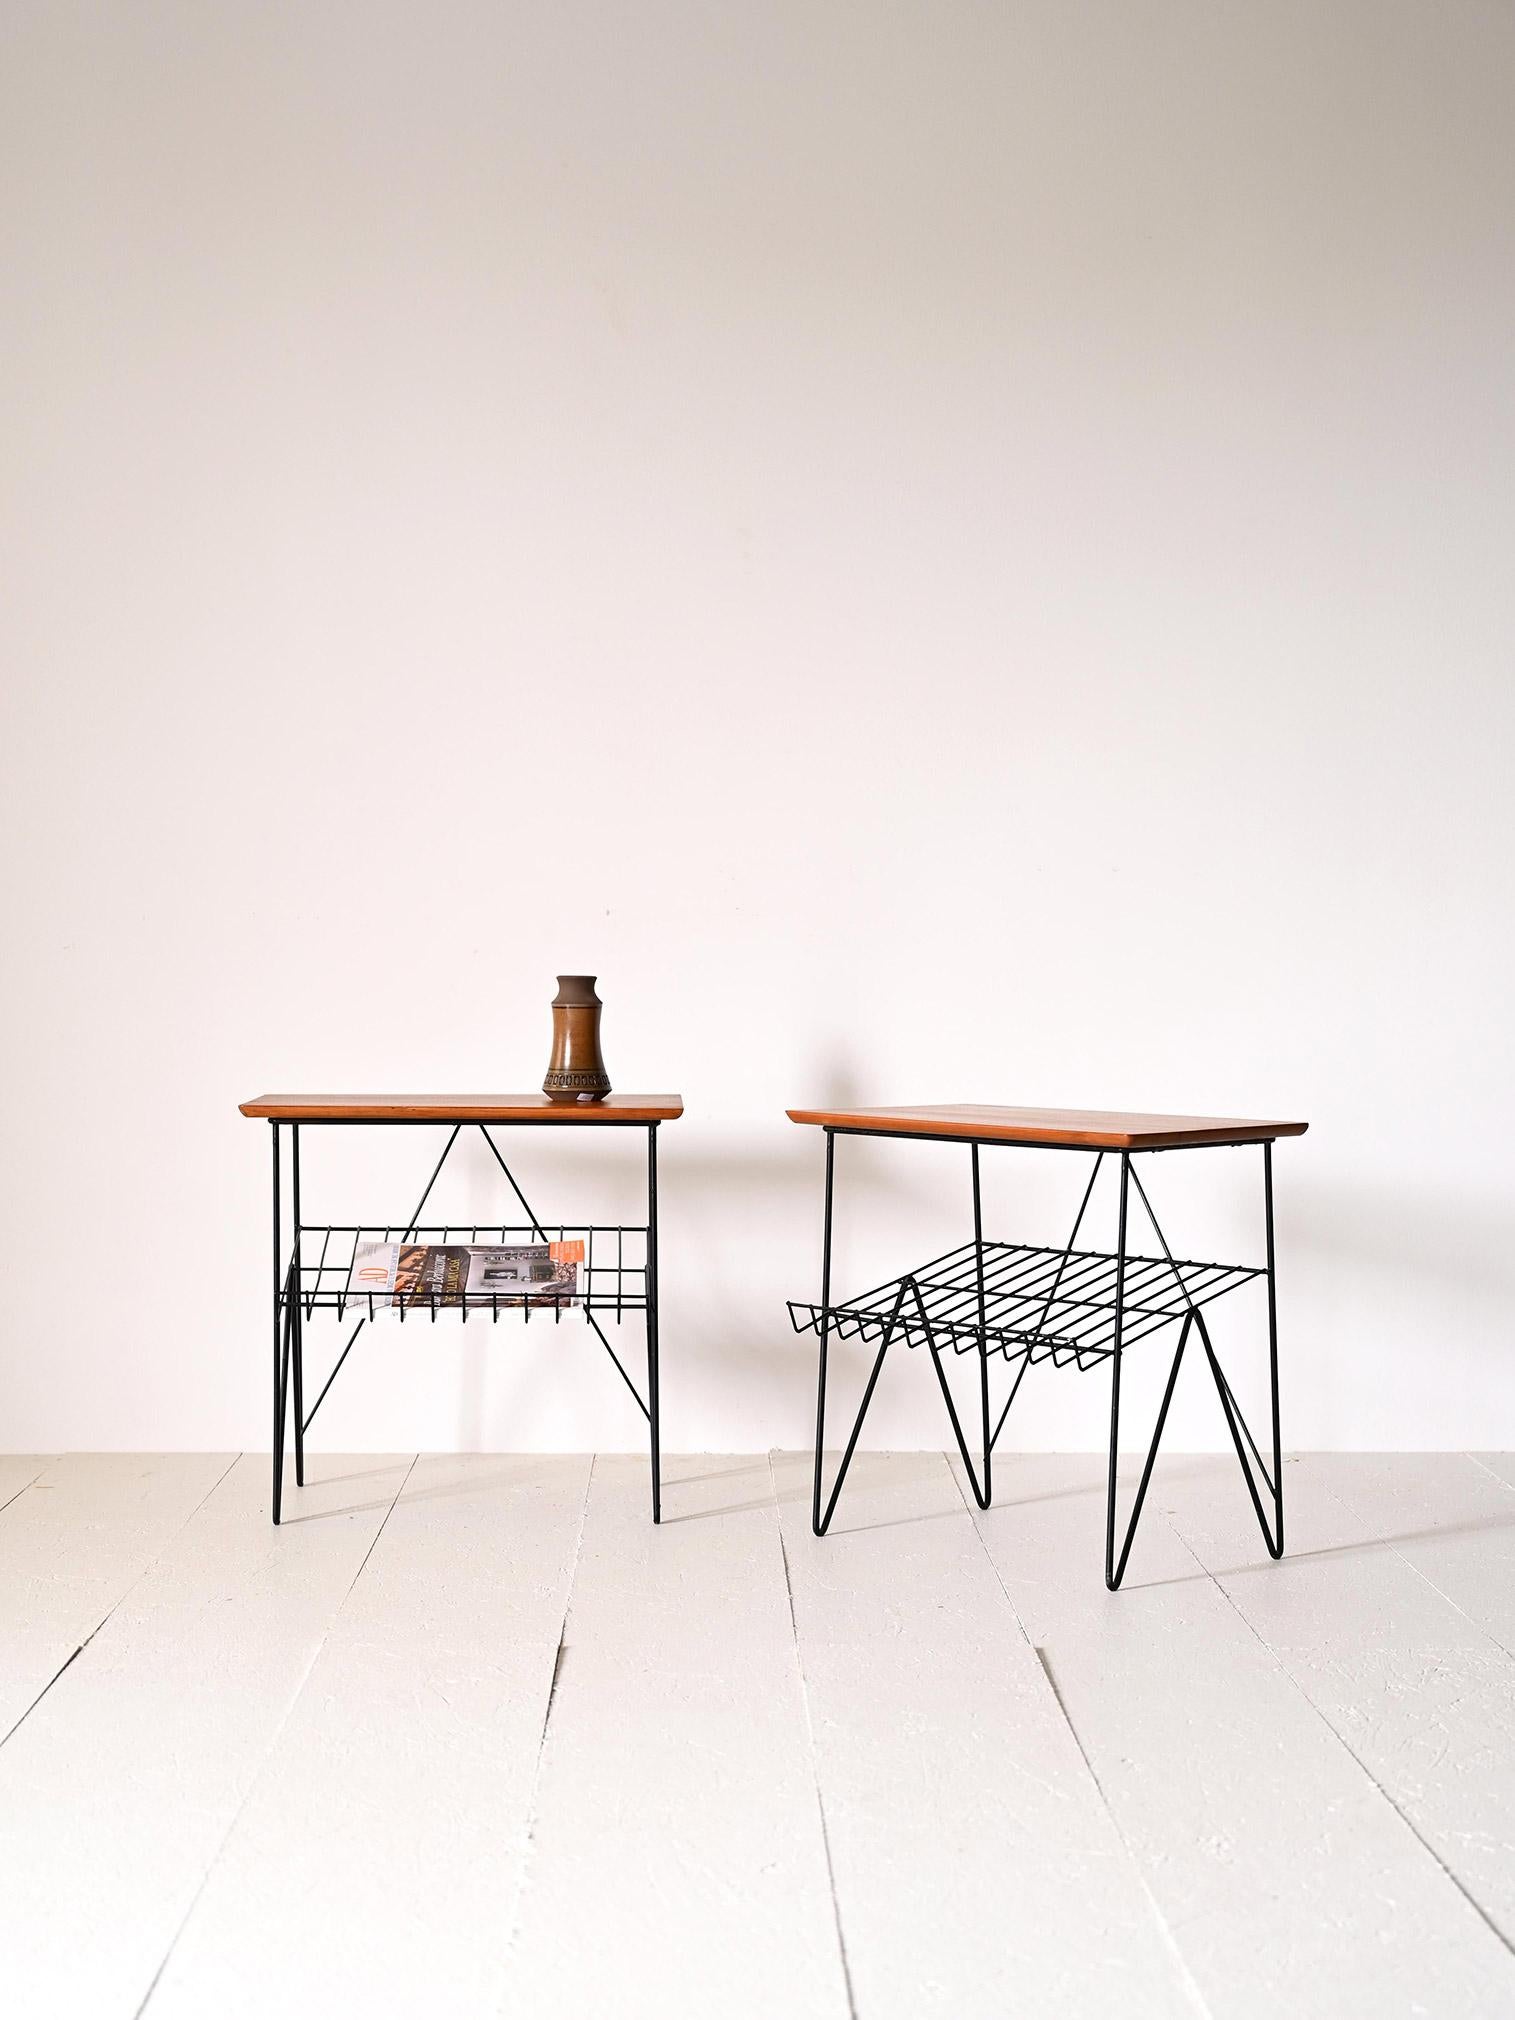 Tables de nuit vintage des années 1960 de provenance suédoise.

Ces meubles scandinaves se distinguent par des formes simples et l'utilisation du métal juxtaposé au bois, un élément typique du design du milieu du siècle.
Ils sont dotés d'un plateau